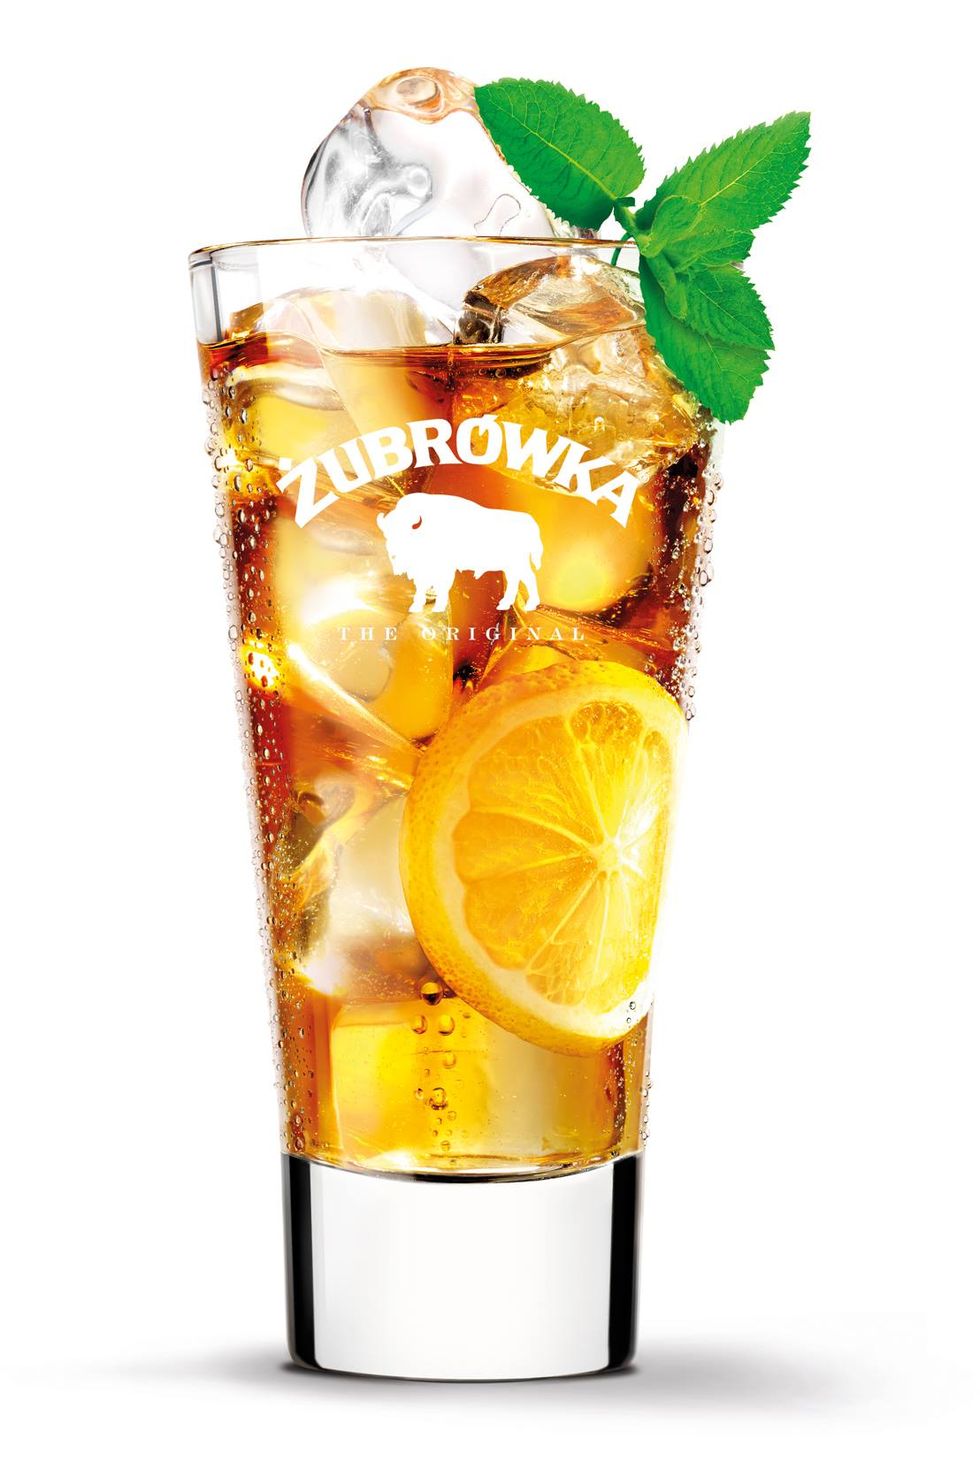 Zubrowka Lemon Grass cocktail